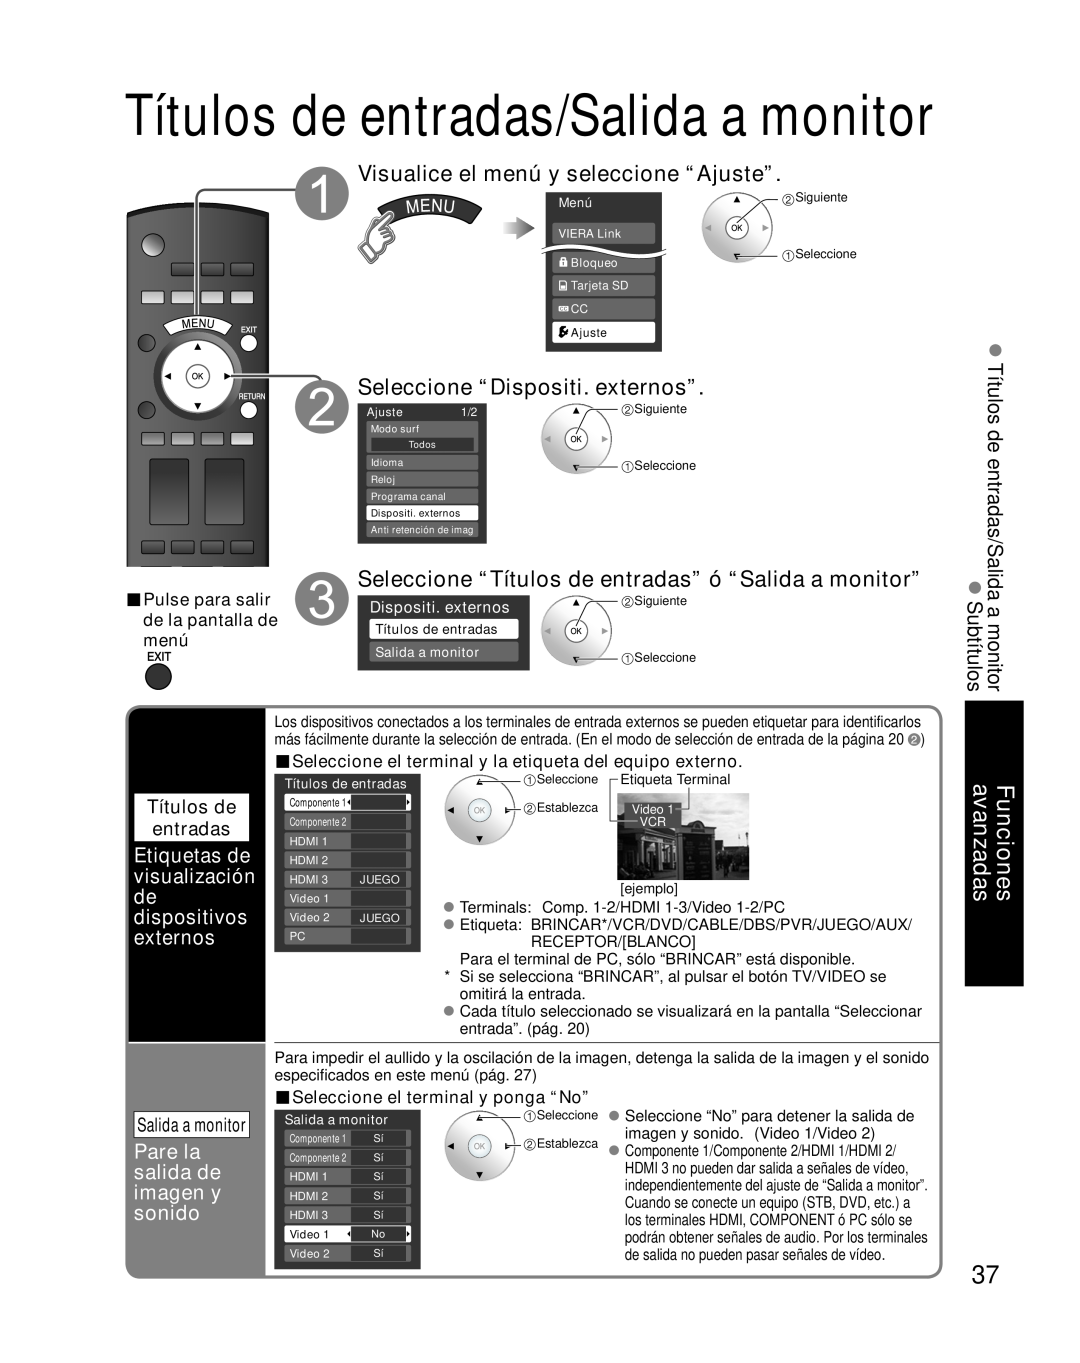 Panasonic TH-42PZ85U Visualice el menú y seleccione “Ajuste”, Seleccione “Dispositi. externos”, Funciones avanzadas, Menú 